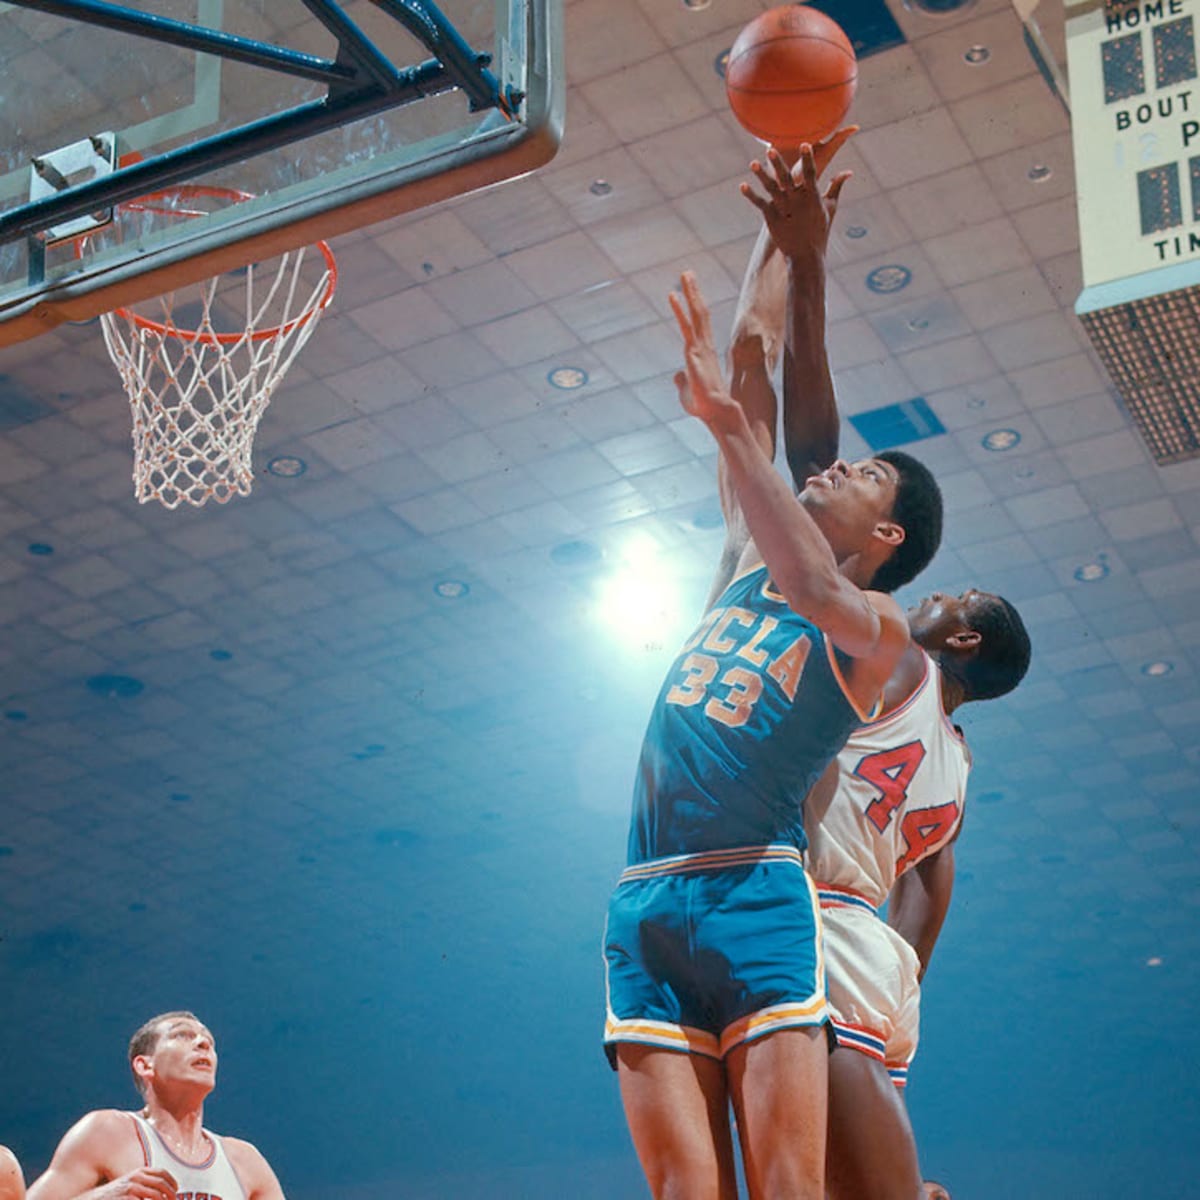 Kareem Abdul-Jabbar: African American basketball legend